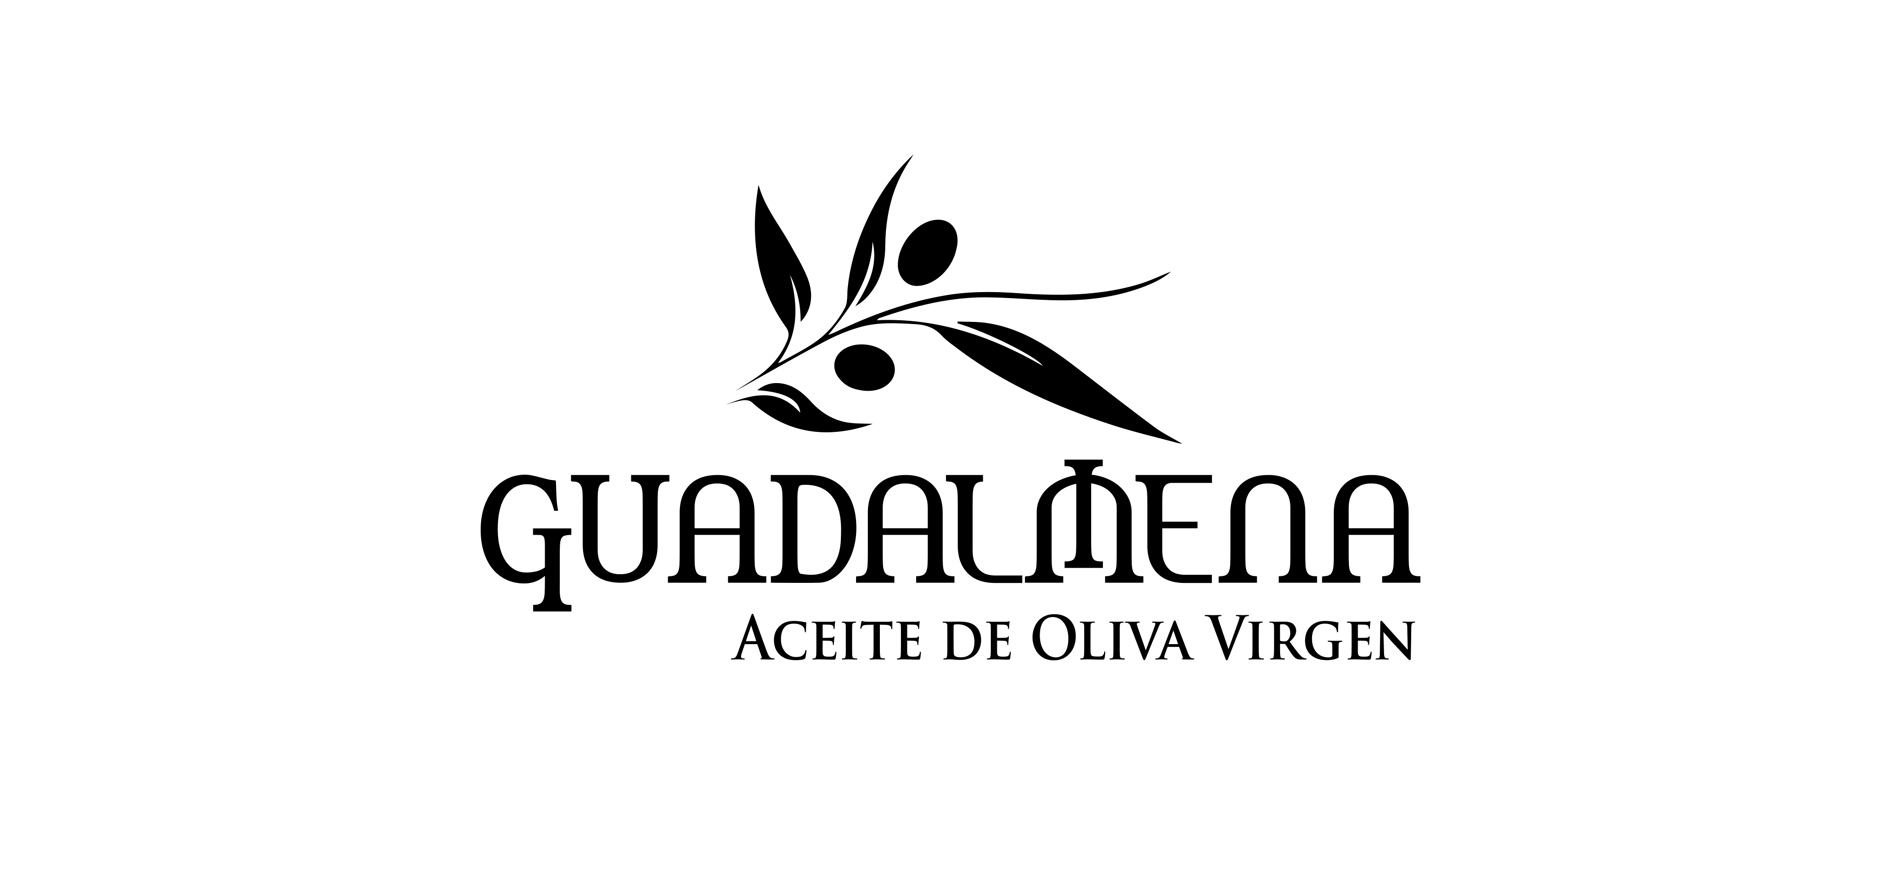 Diseño gráfico y creativo de etiquetas de aceite de oliva virgen extra para la marca GUADALMENA